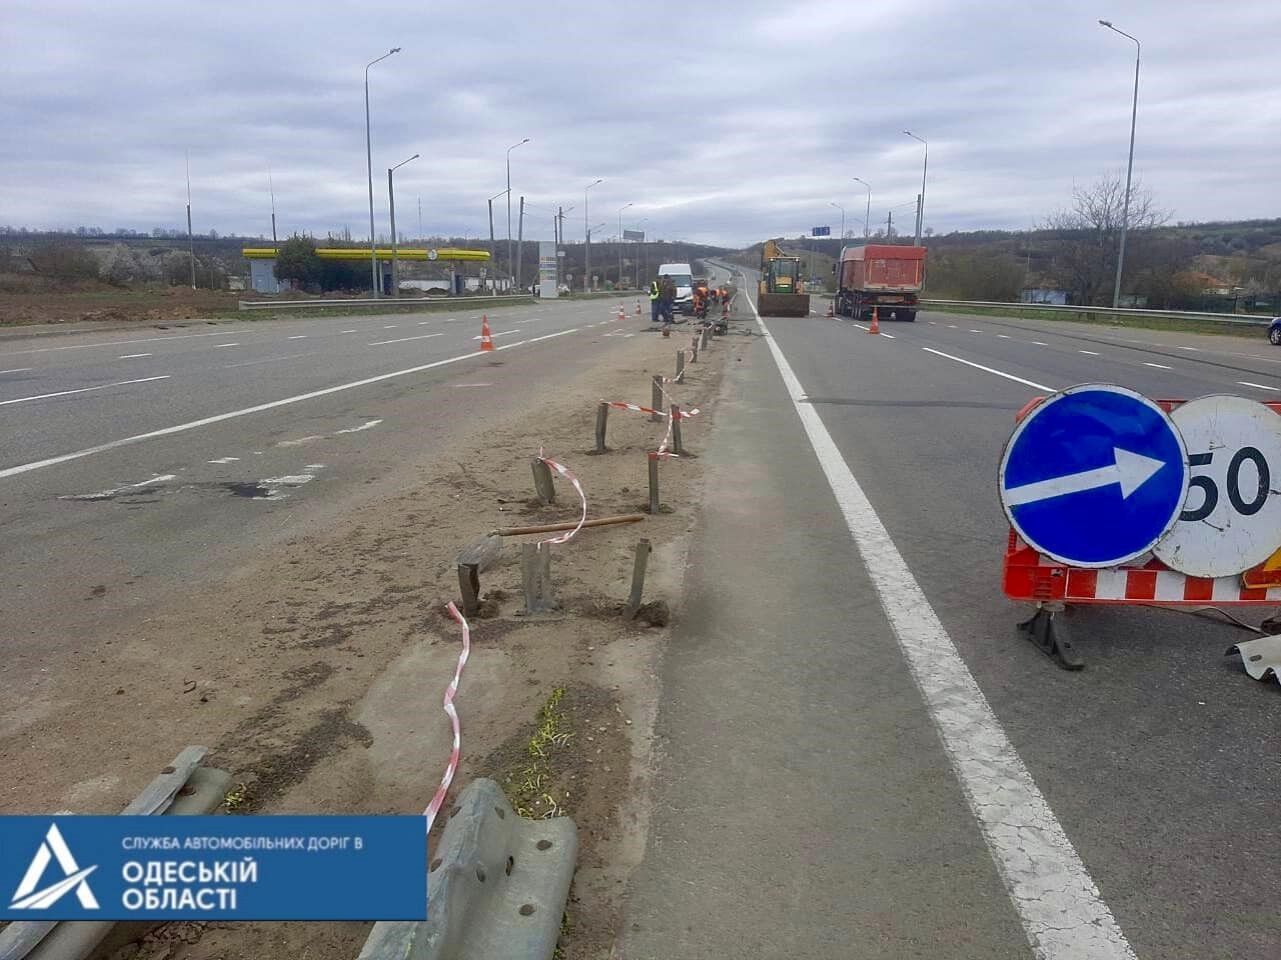 Після звільнення міст від російських окупантів команда Укравтодору негайно розпочала детальну оцінку руйнувань дорожньої та мостової інфраструктури